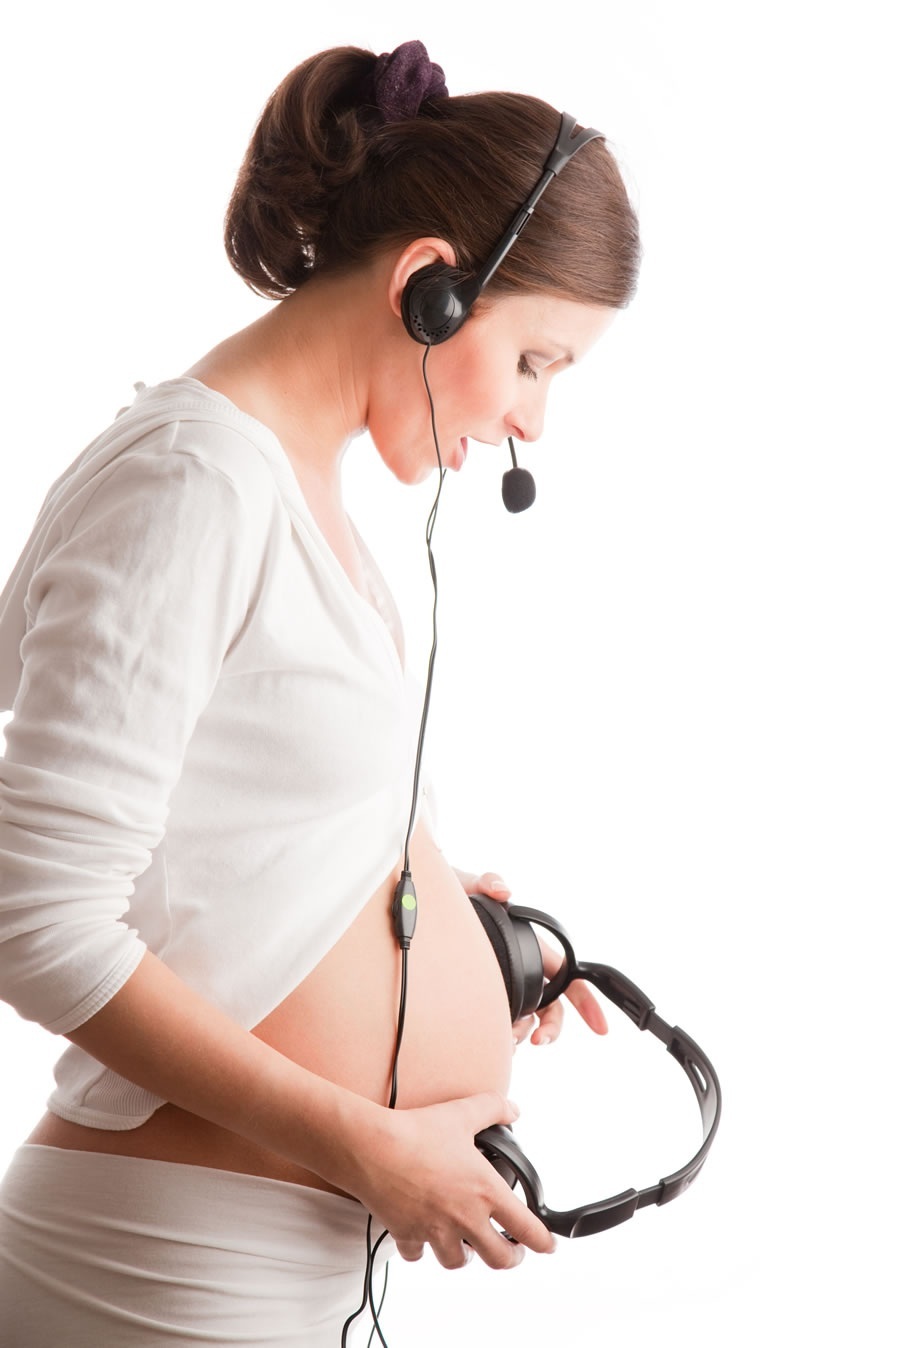 Mulher grávida falando com o bebê utilizando fones e microfones - foto: MariyaL/ShutterStock.com